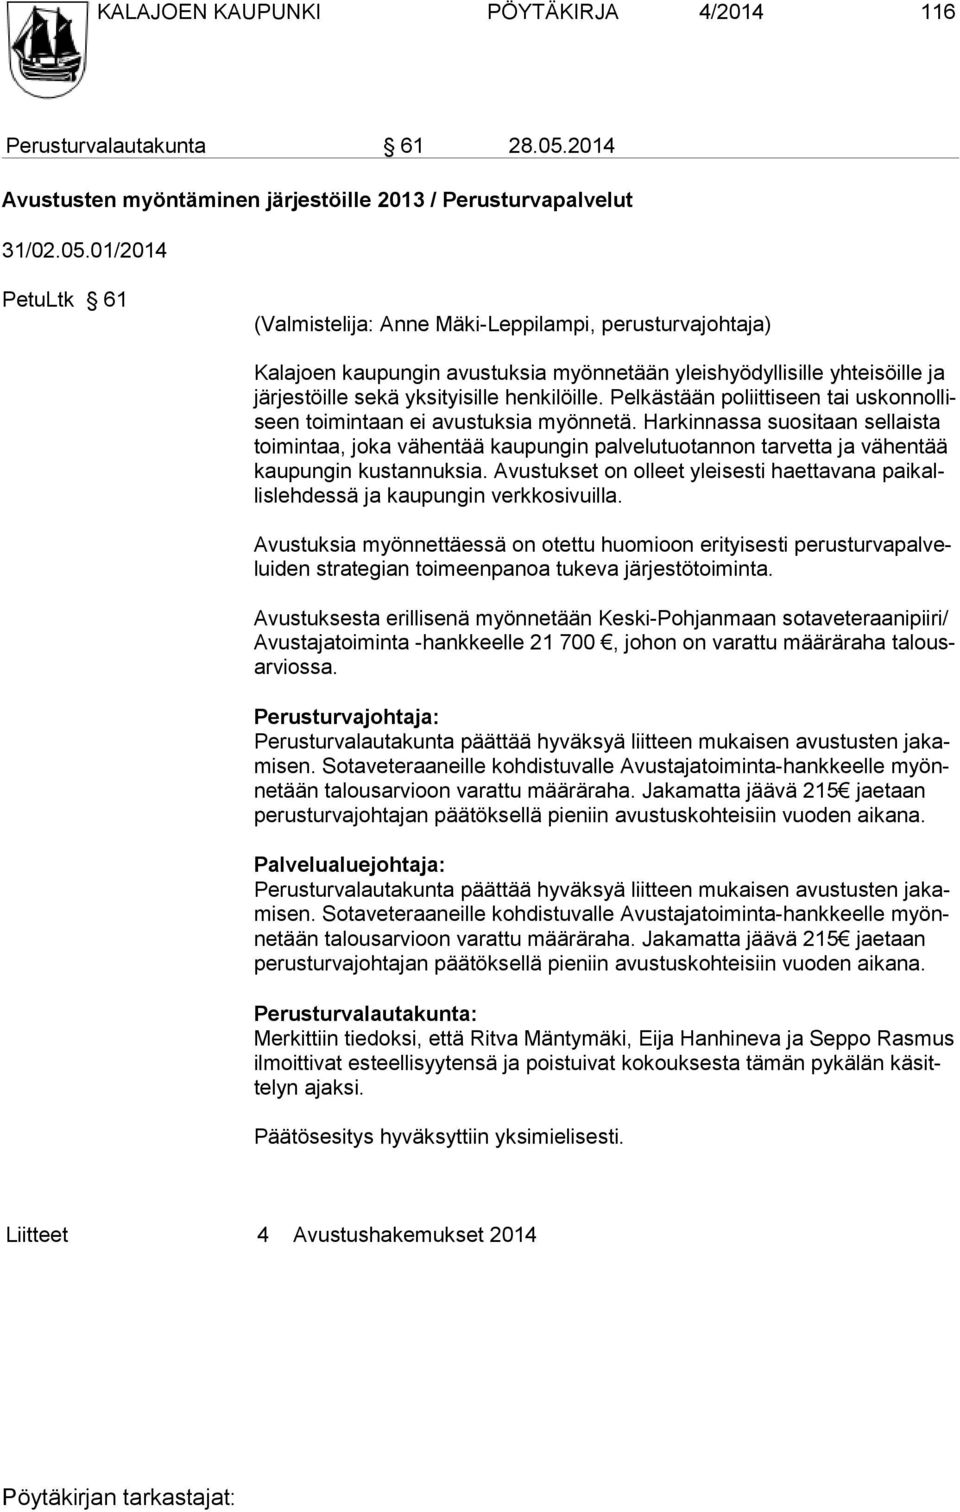 01/2014 PetuLtk 61 (Valmistelija: Anne Mäki-Leppilampi, perusturvajohtaja) Kalajoen kaupungin avustuksia myönnetään yleishyödyllisille yhteisöille ja järjestöille sekä yksityisille henkilöille.